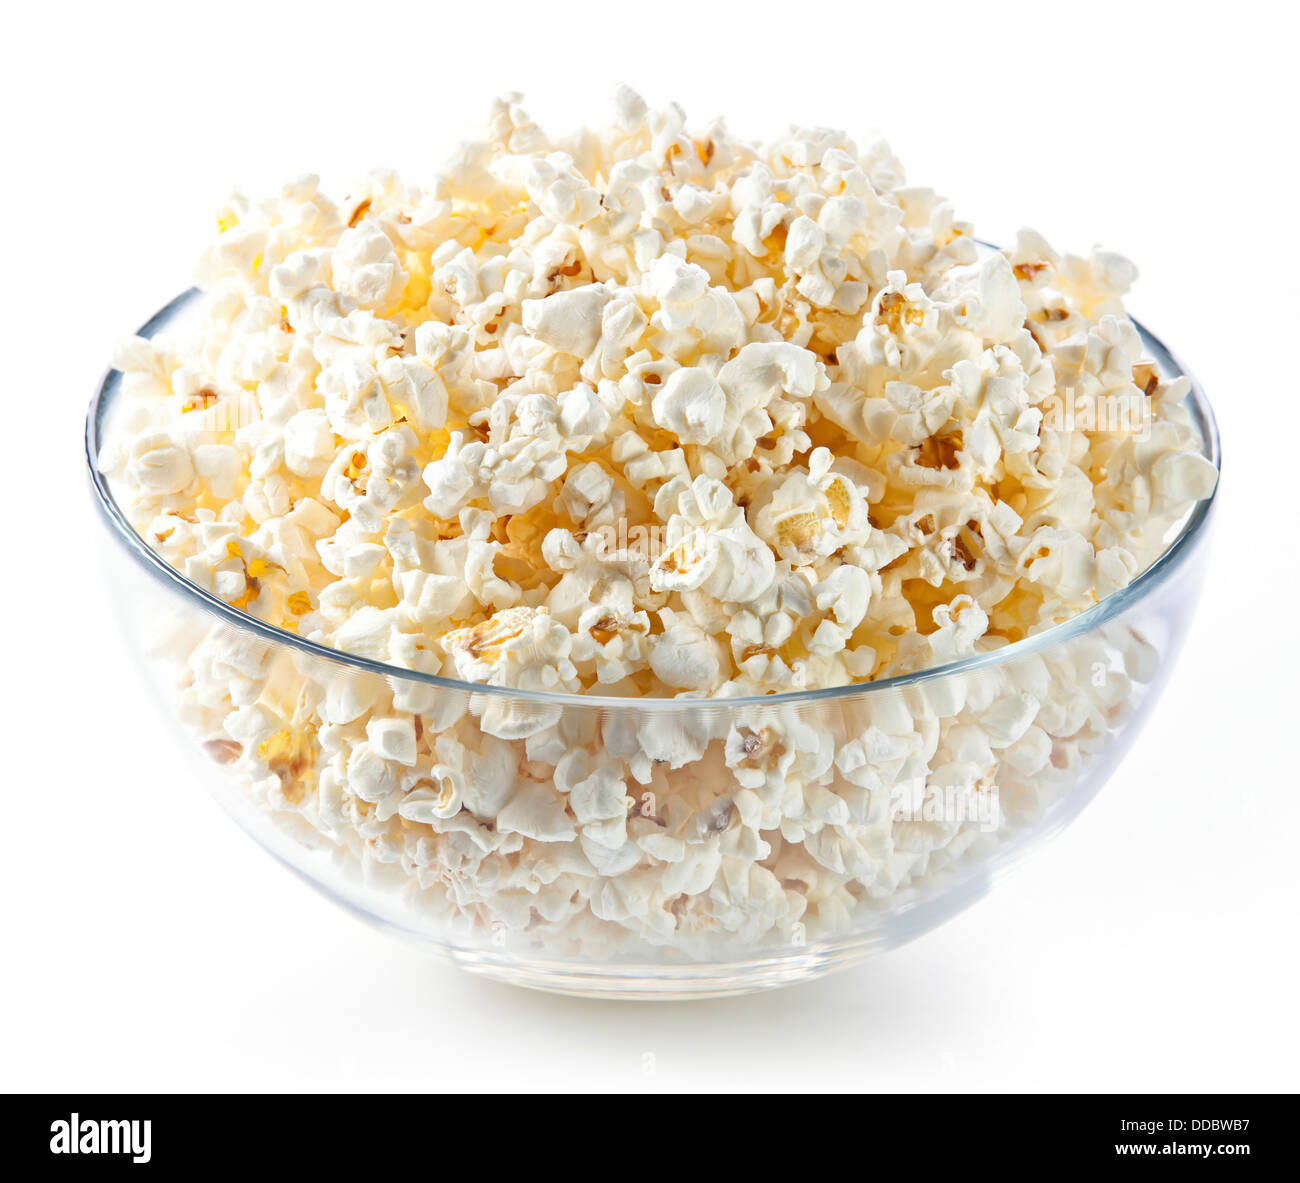 Glasschale mit Popcorn auf weißem Hintergrund Stockfoto